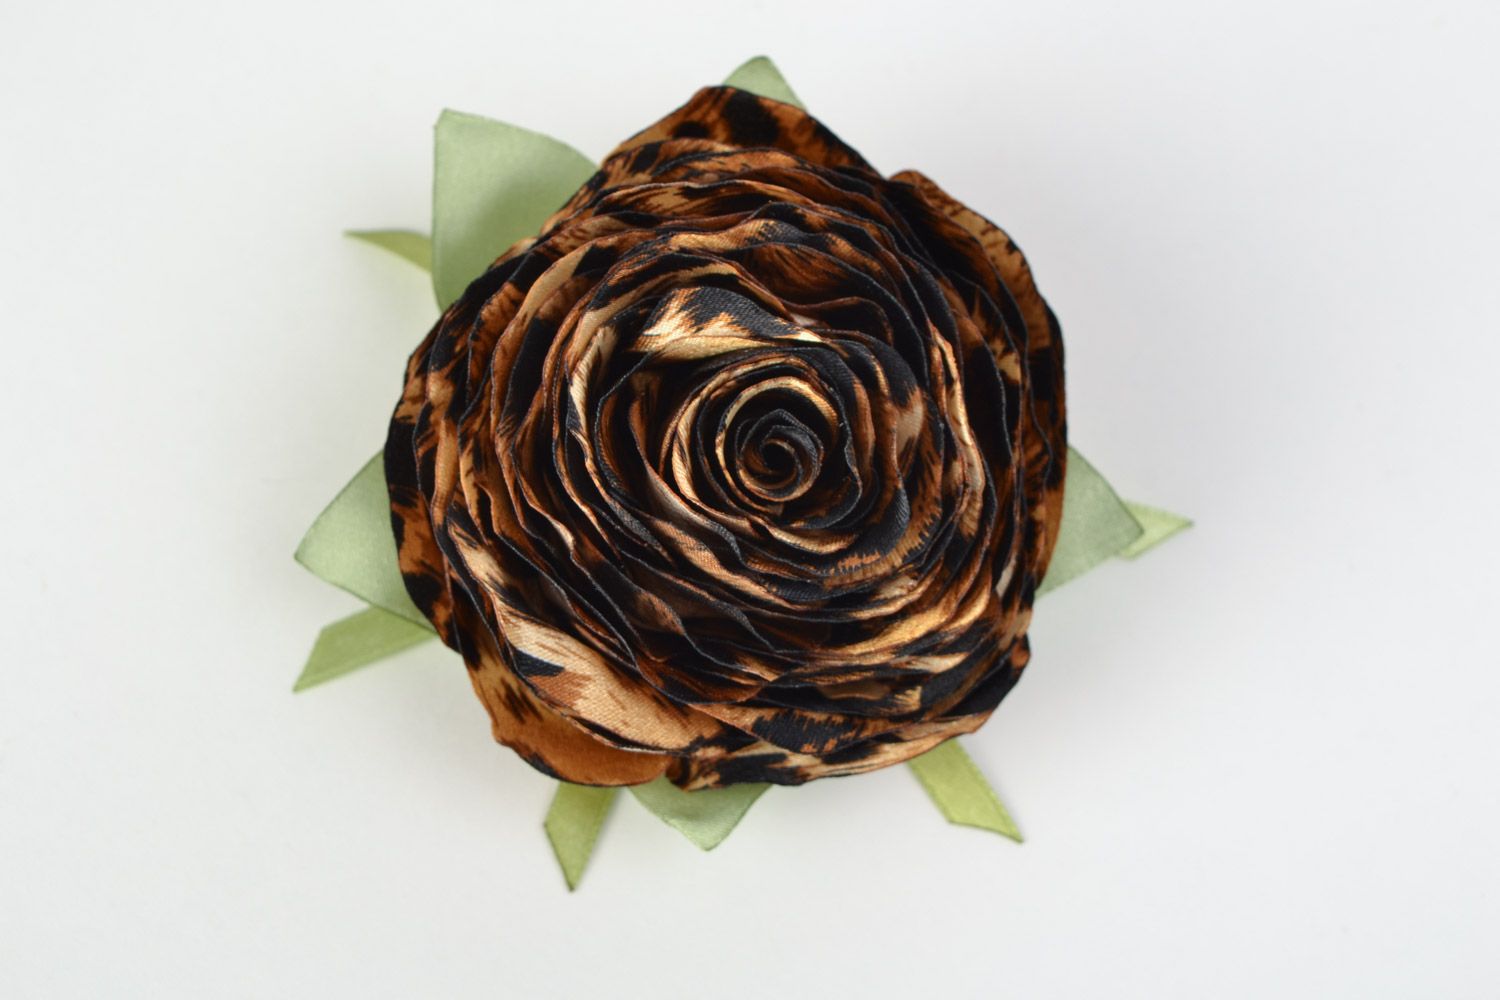 Textil Haarblüte Brosche aus Atlas mit Tier Print in Form von der Rose Handarbeit foto 2